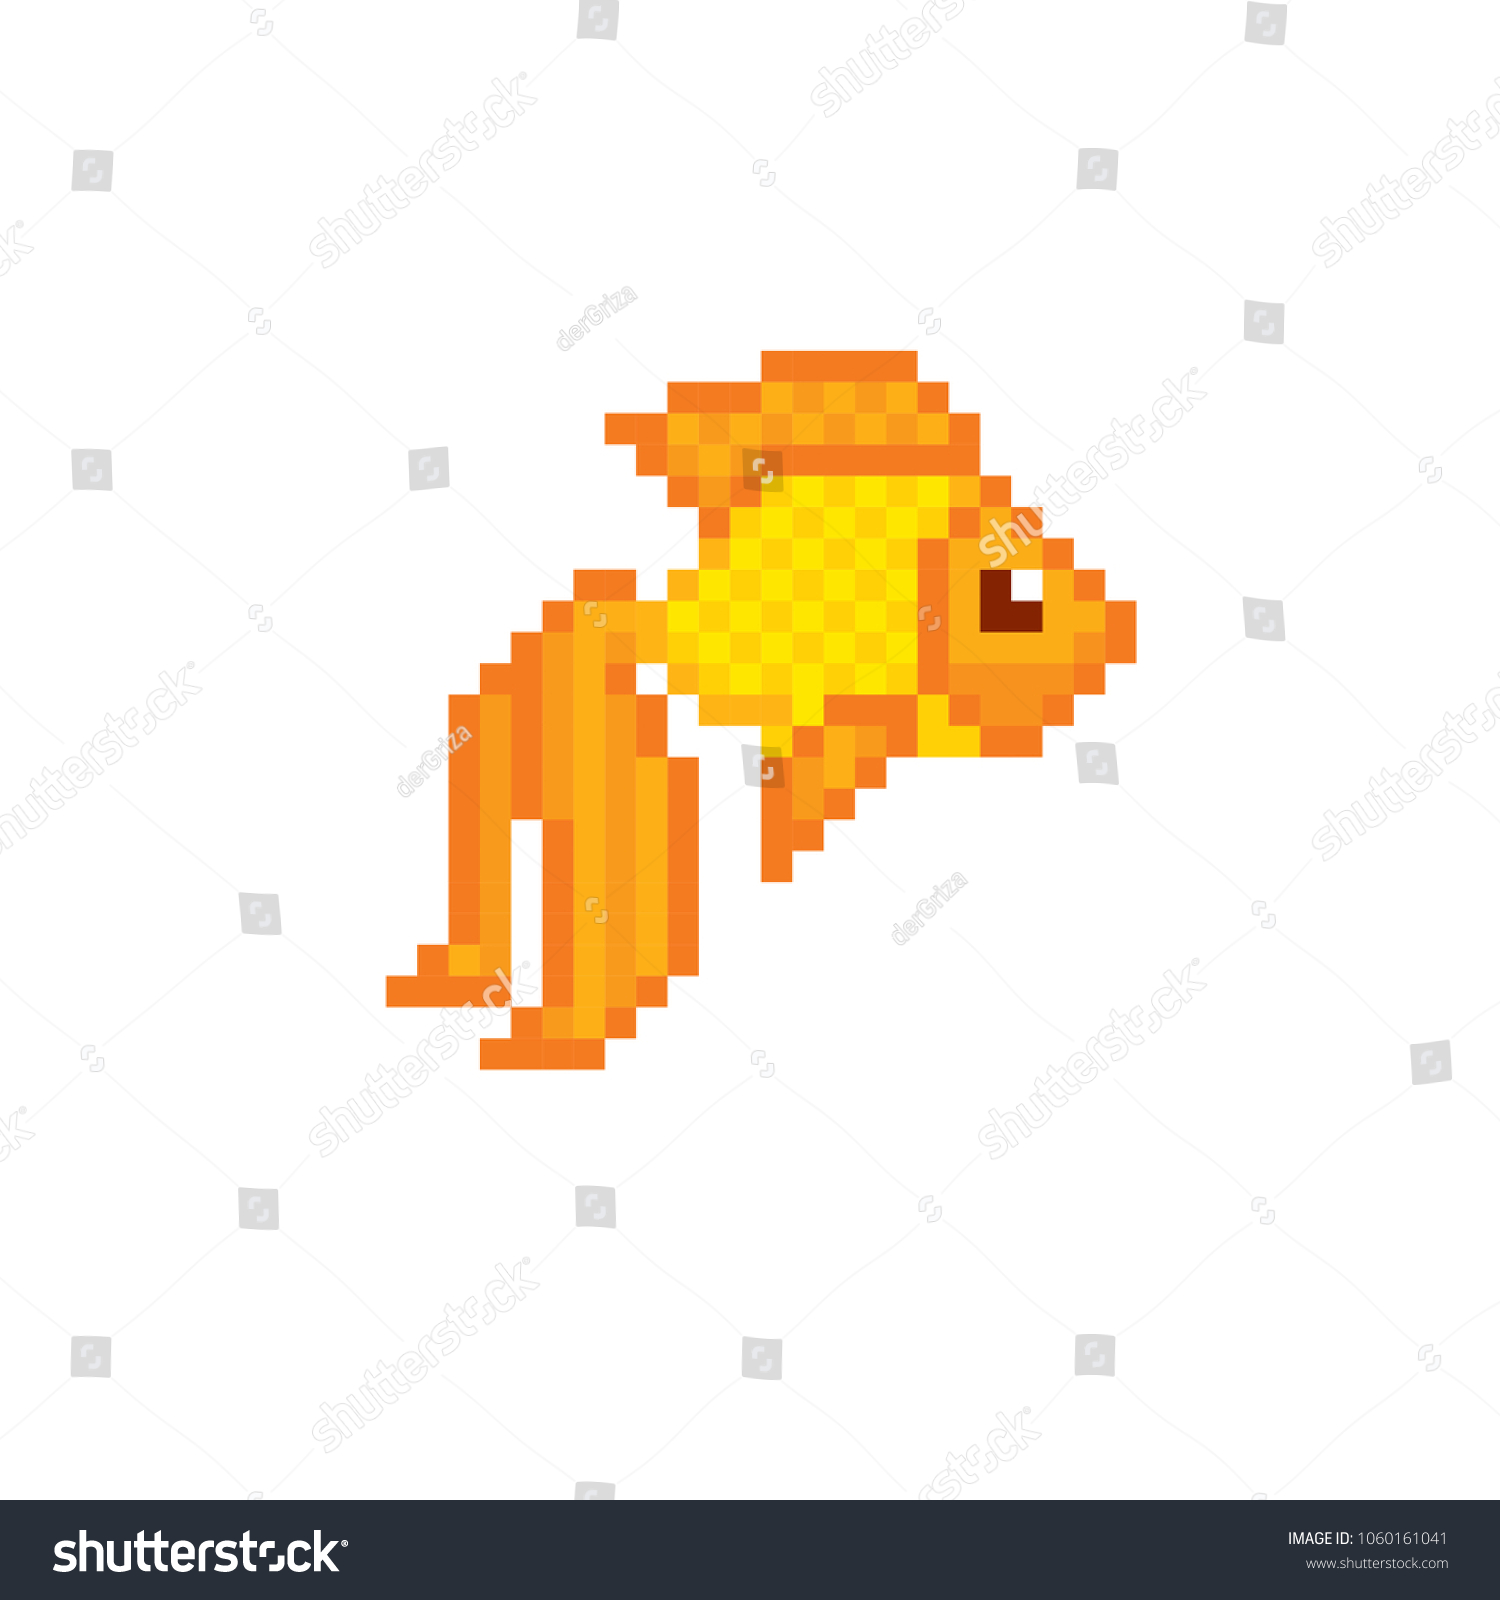 Gold fish terraria фото 1